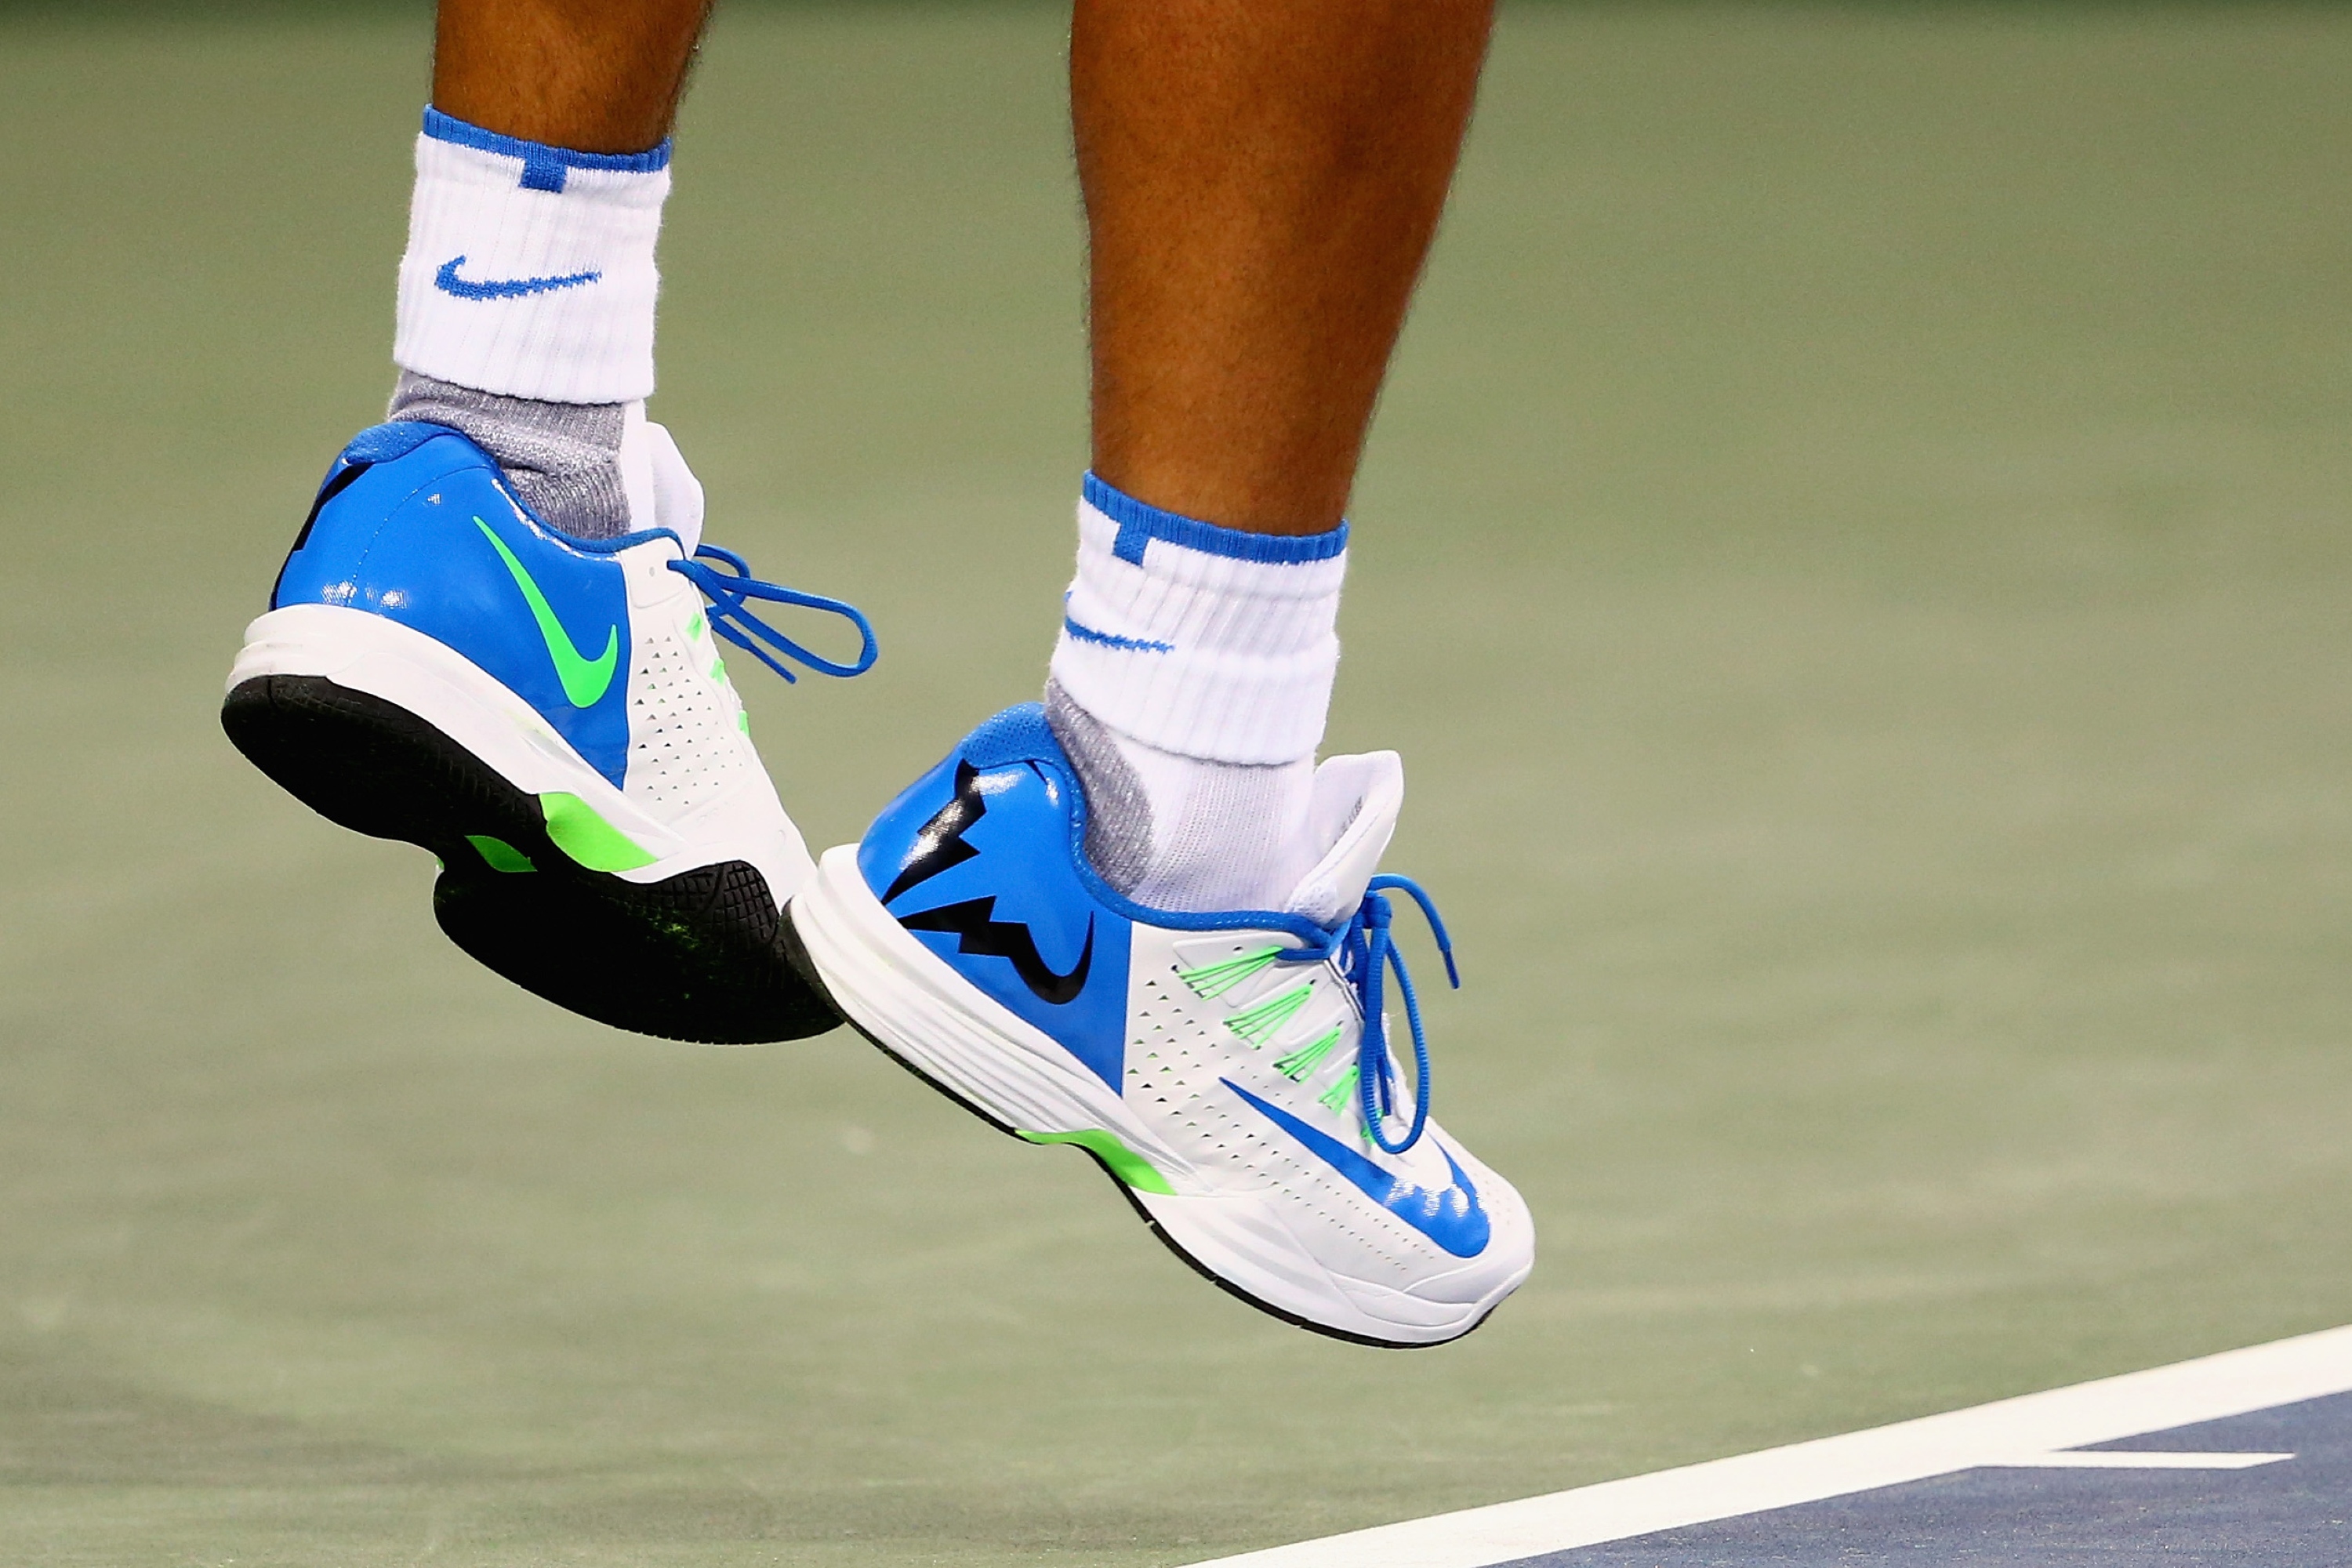 PHOTOS: Rafael Nadal loses to Feliciano Lopez in Cincinnati – Rafael ...